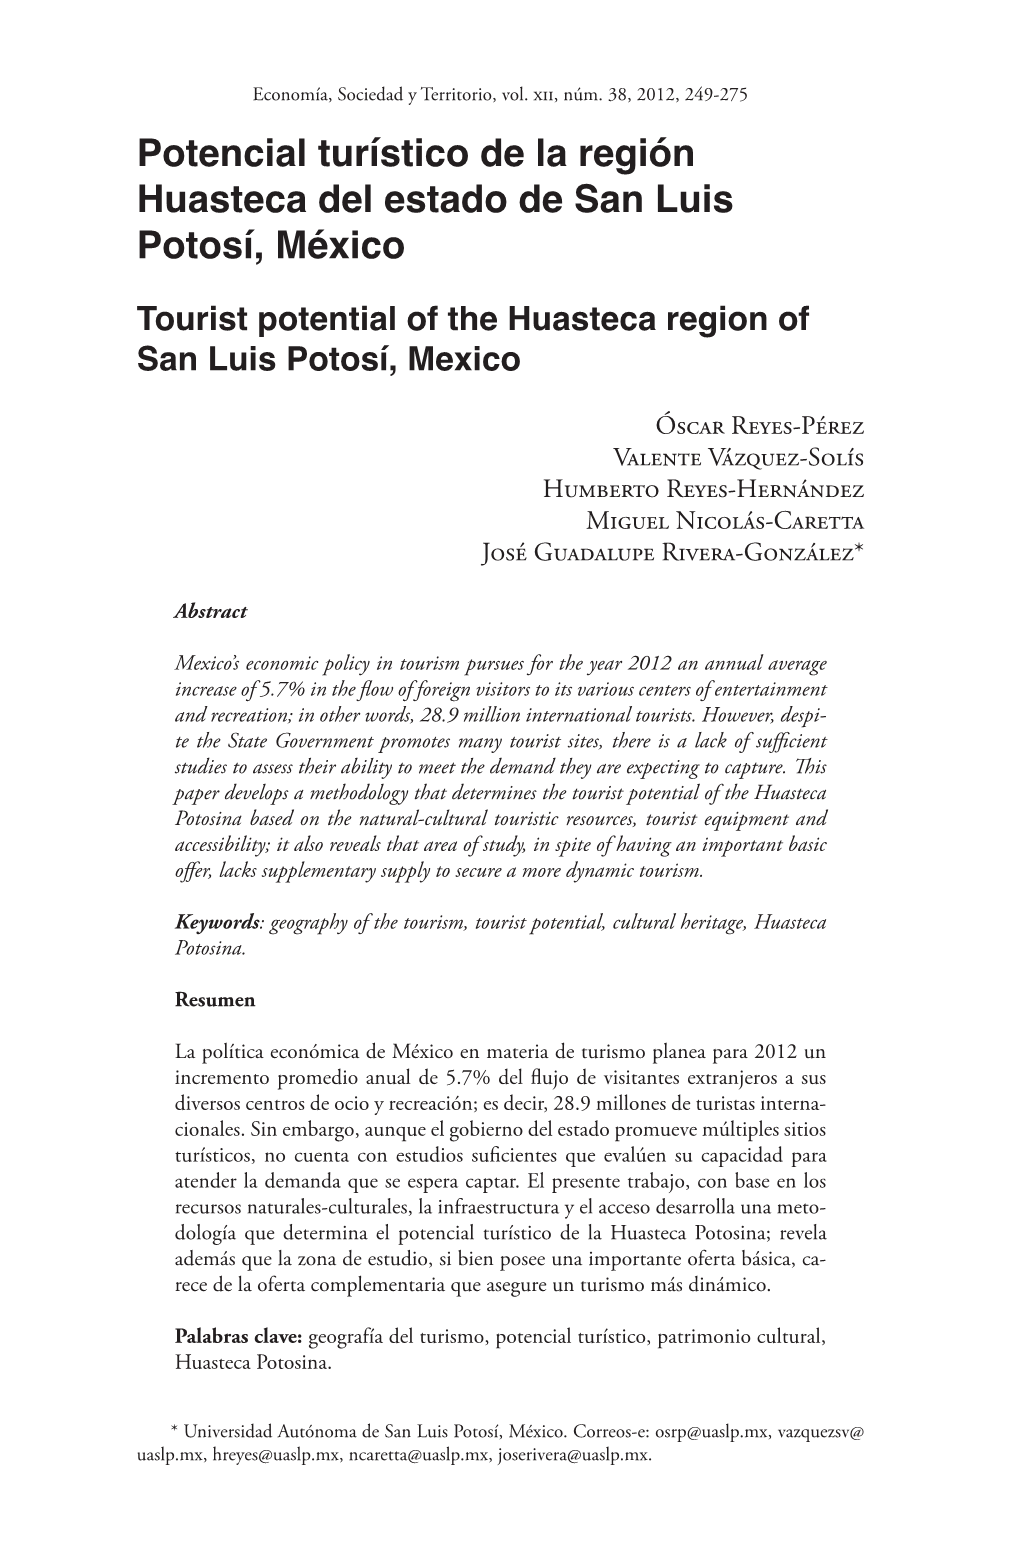 Potencial Turístico De La Región Huasteca Del Estado De San Luis Potosí, México